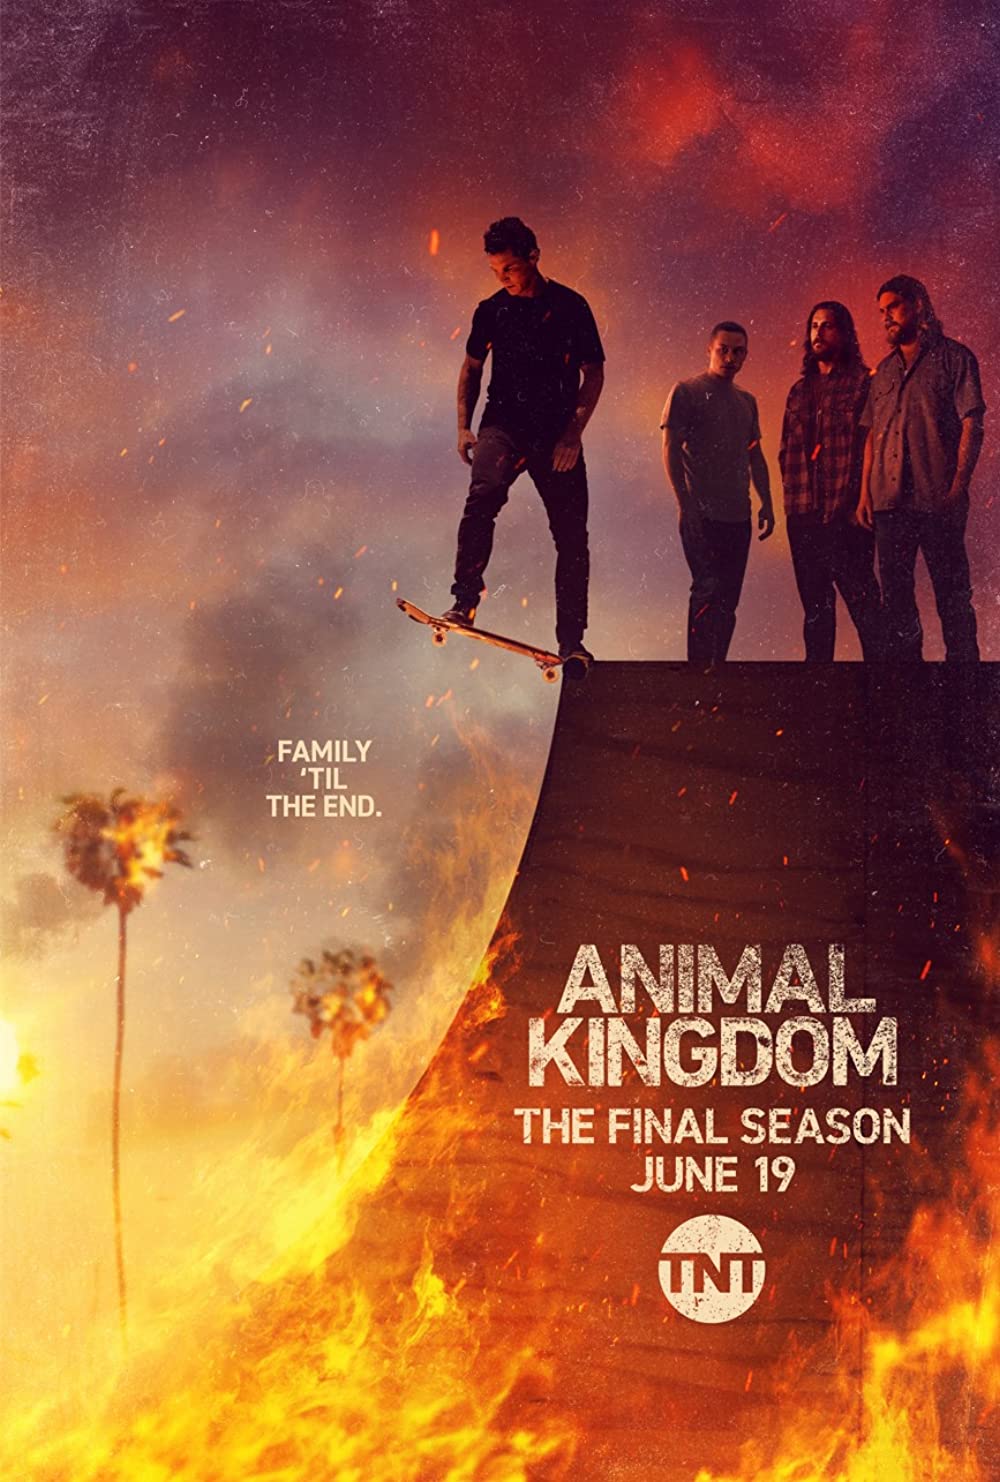 ดูหนังออนไลน์ฟรี Animal Kingdom Season 1 EP.9 แอนนิเมิล คิงด้อม ซีซั่น 1 ตอนที่ 9 (ซับไทย)